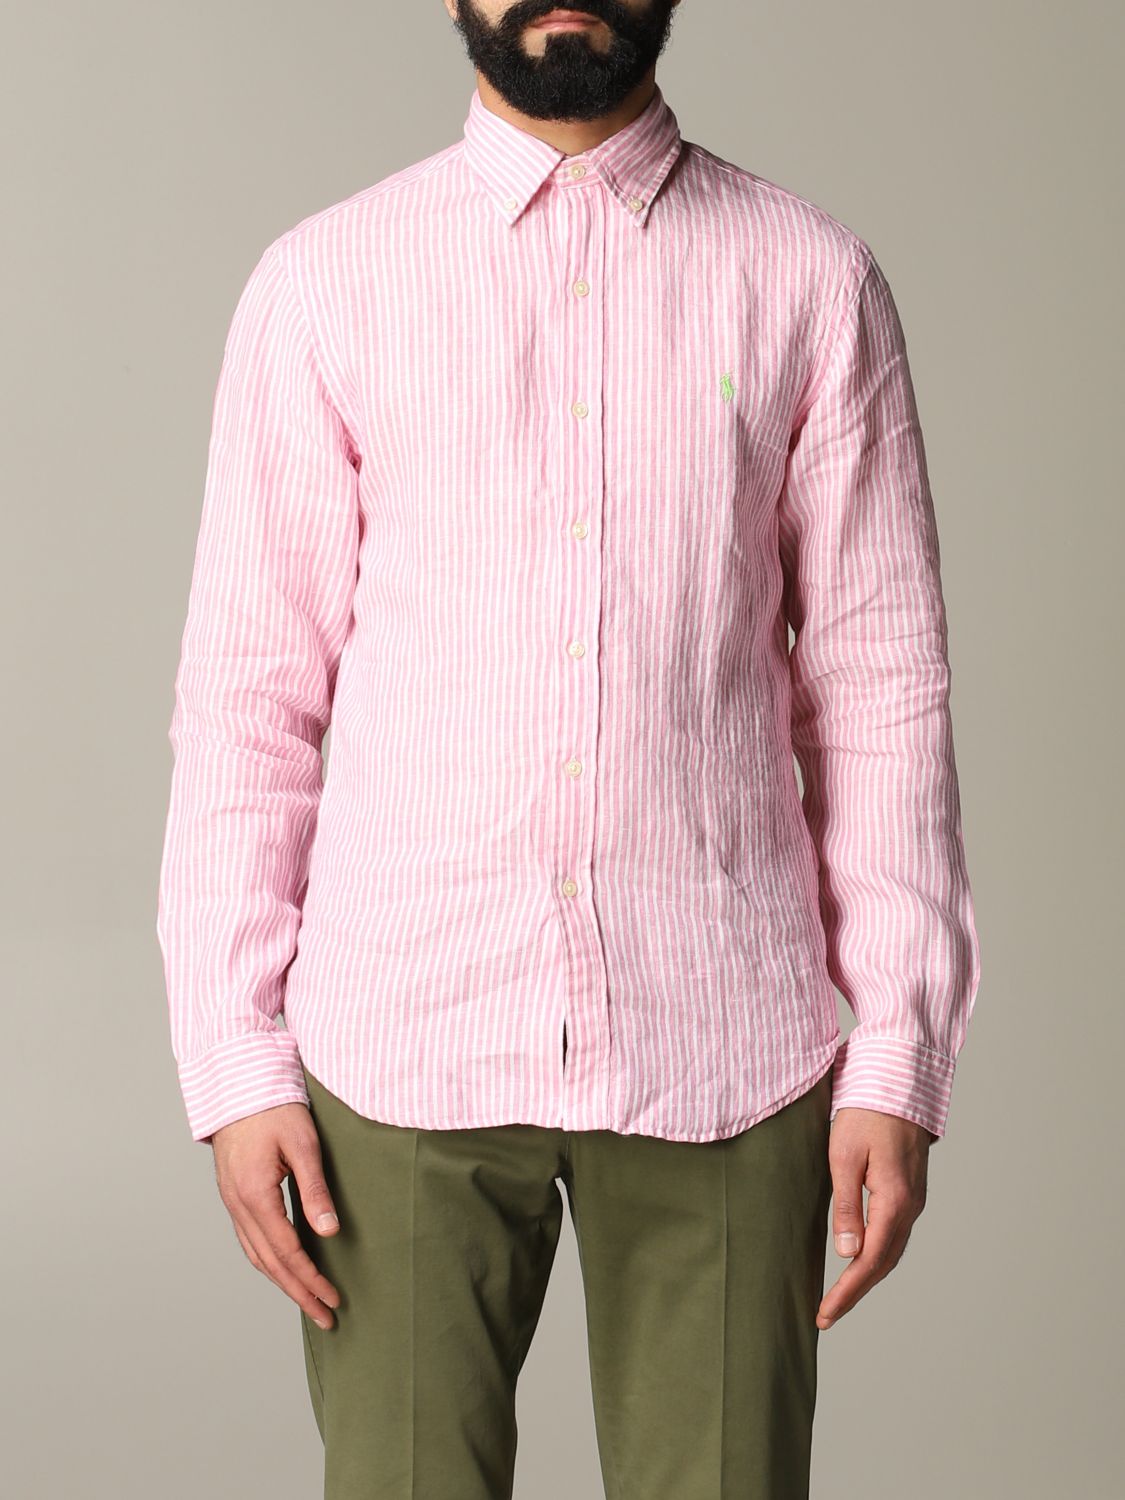 Alternatief twintig Naar Polo Ralph Lauren Outlet: shirt for man - Pink | Polo Ralph Lauren shirt  710787525 online on GIGLIO.COM